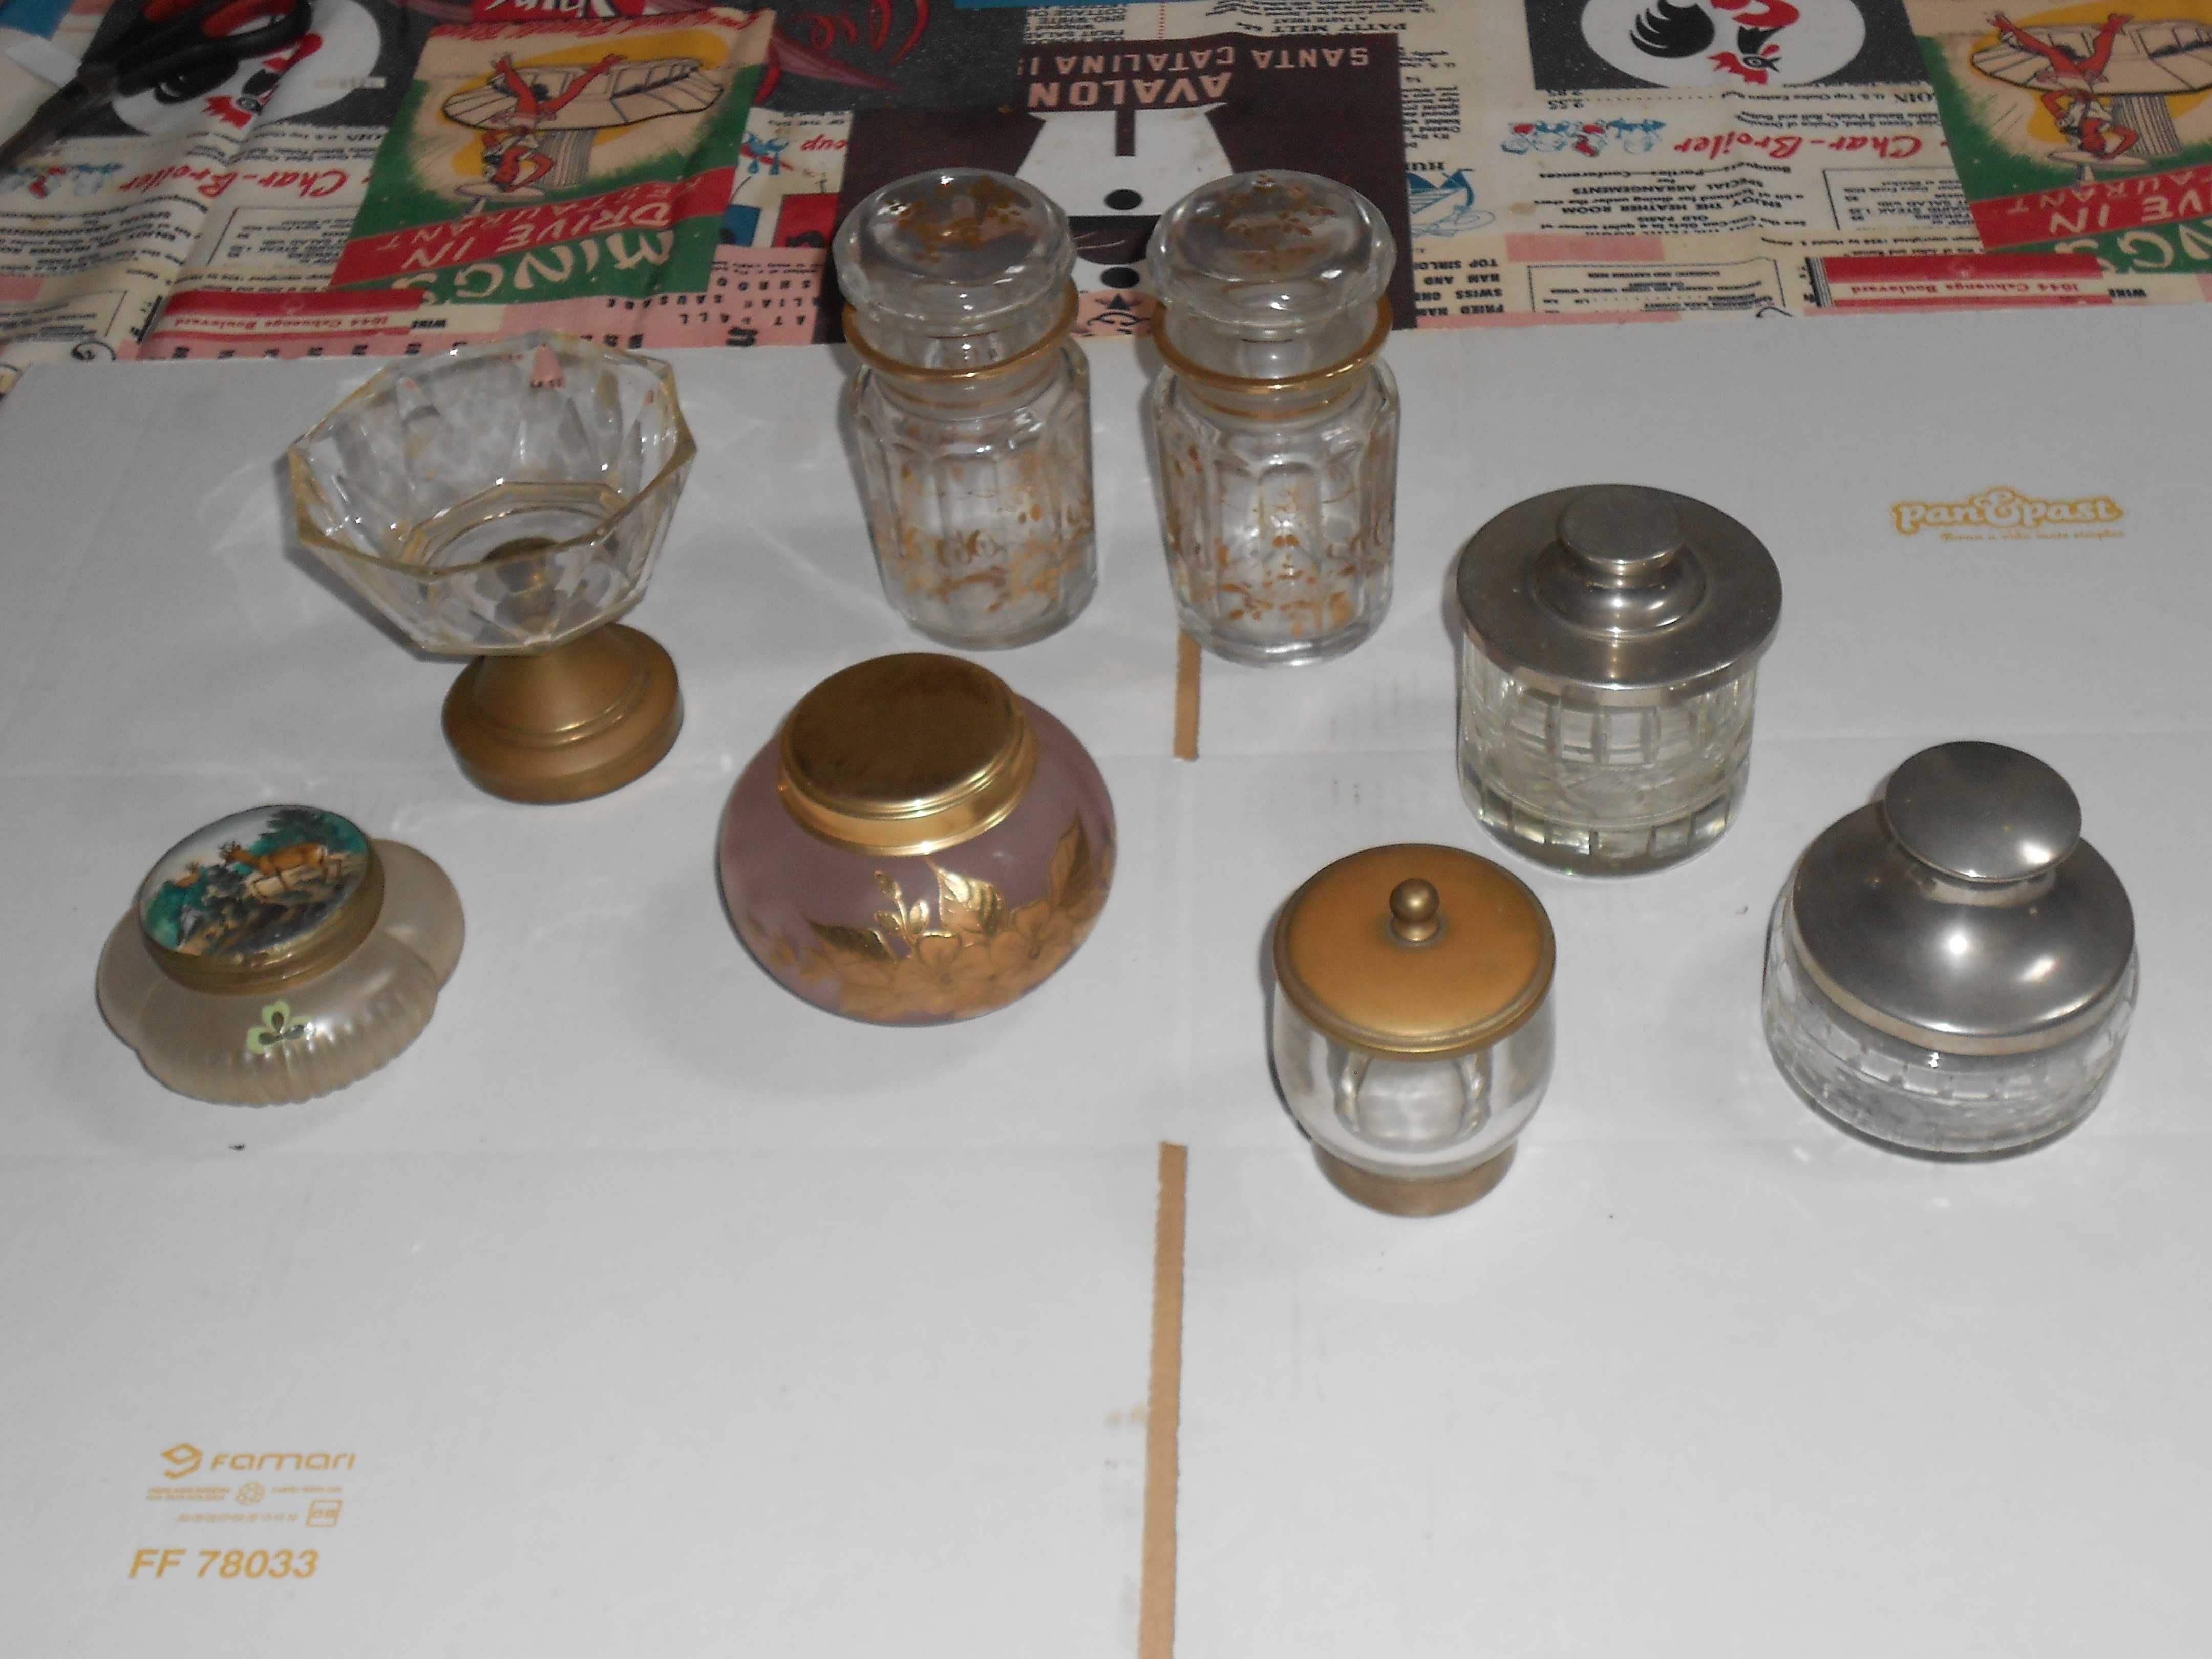 Caixas potes frascos antigos vintage decoracao coleccao